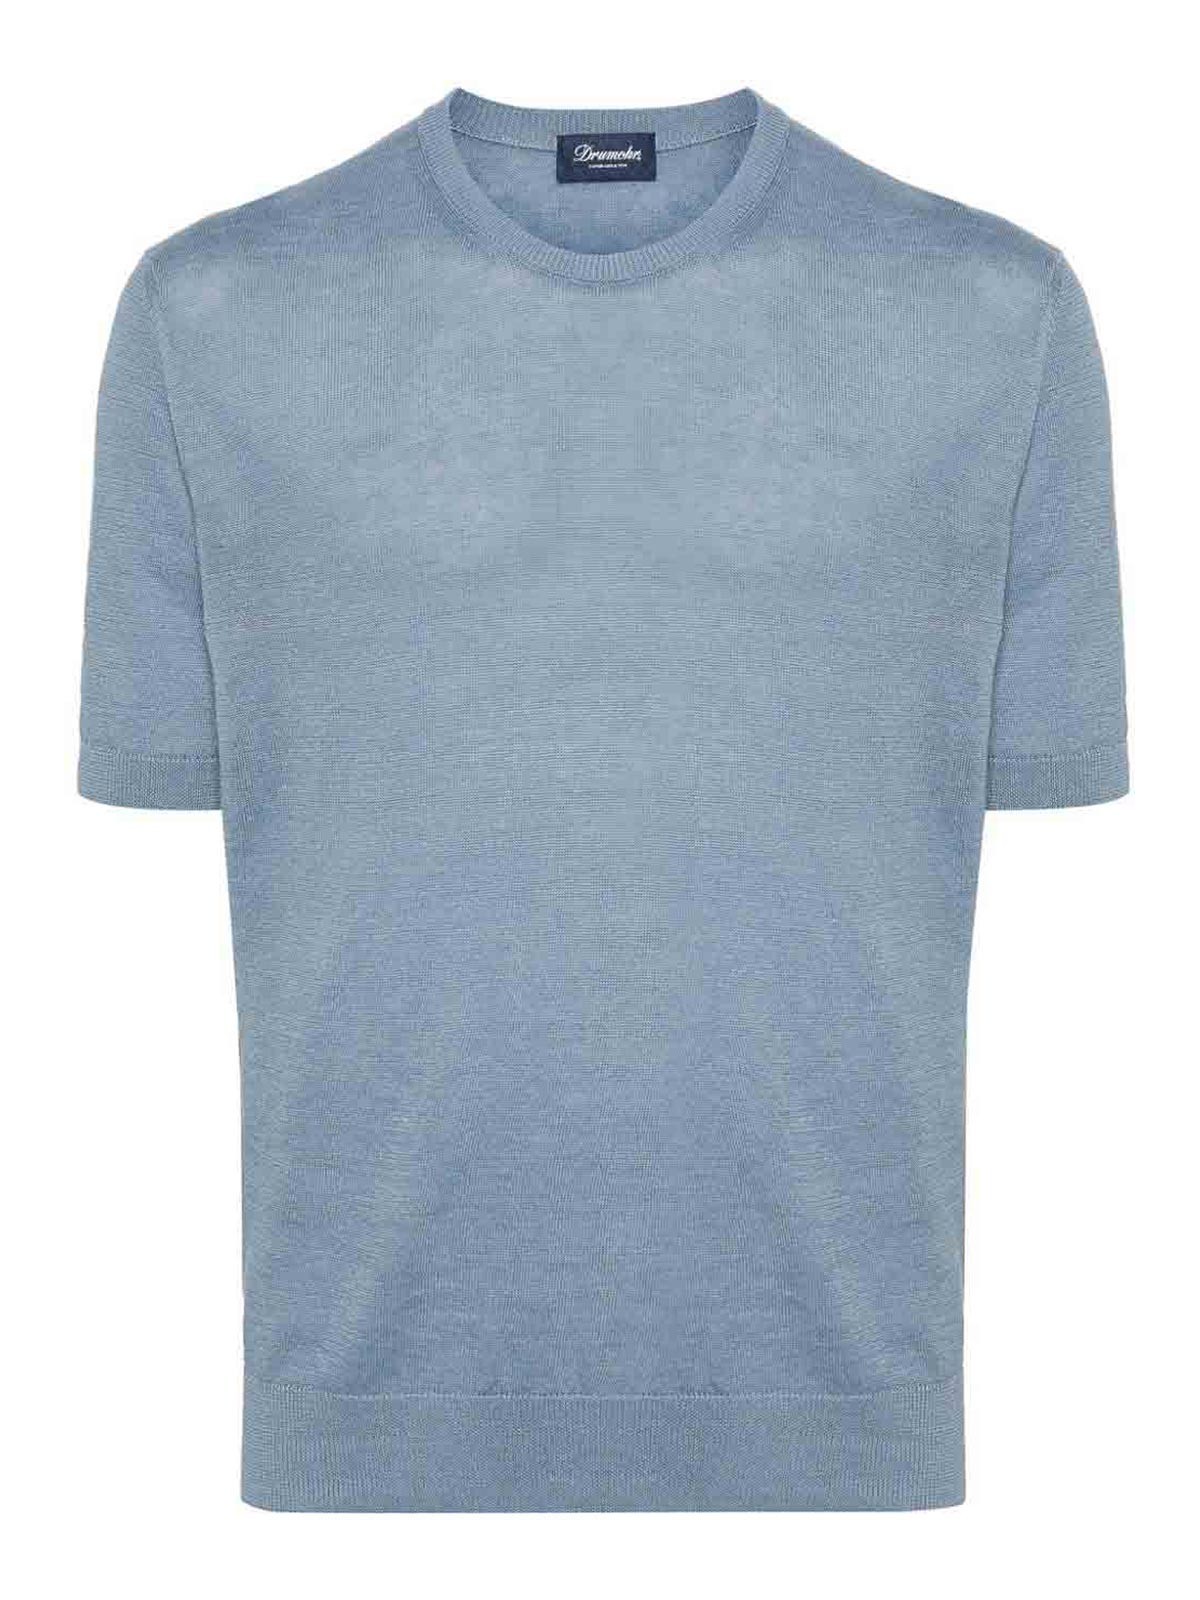 Shop Drumohr Camiseta - Azul Claro